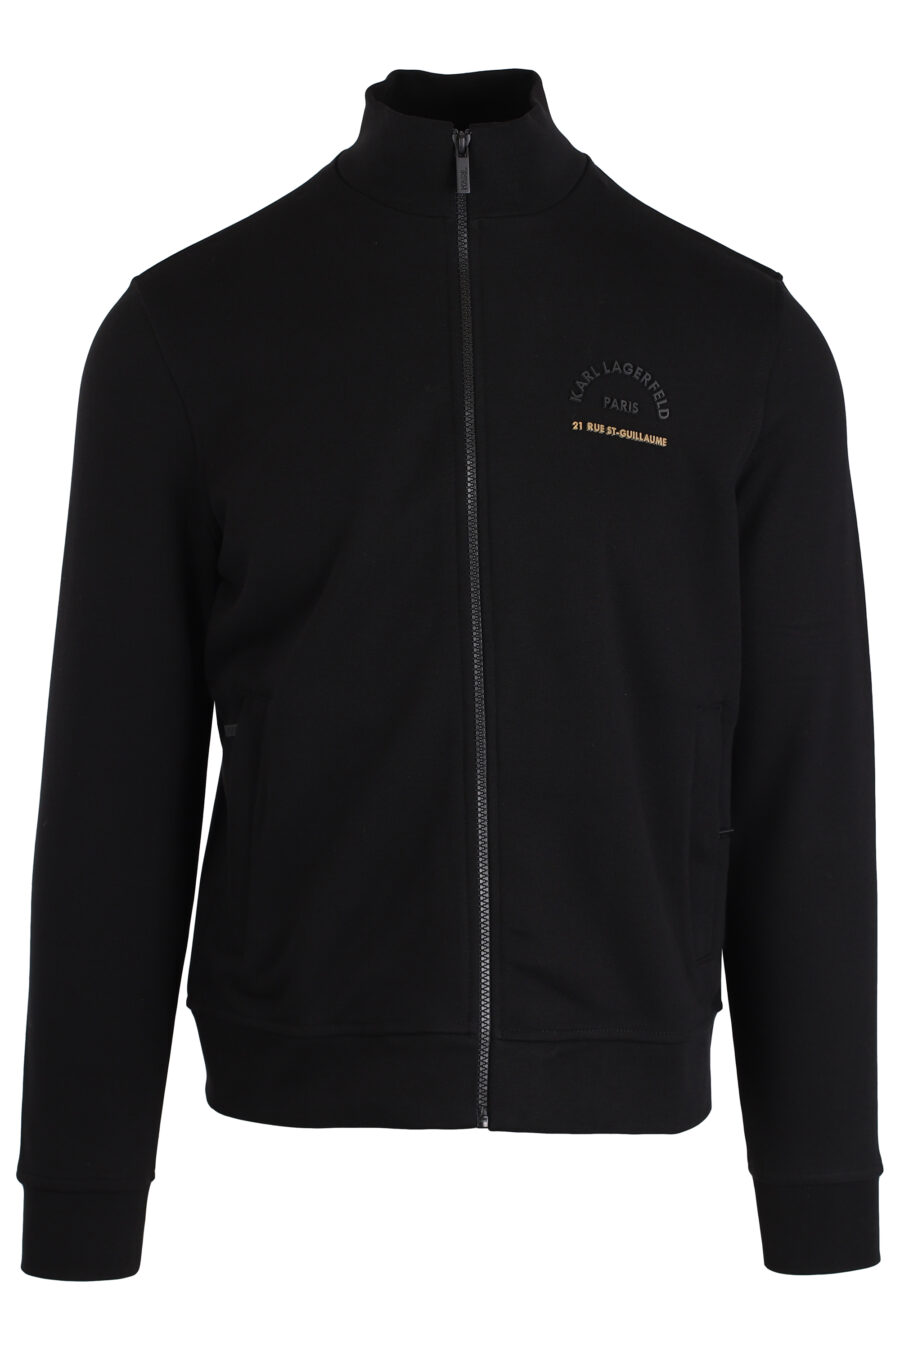 Schwarzes Sweatshirt mit Reißverschluss und goldenem Logo klein - IMG 3997